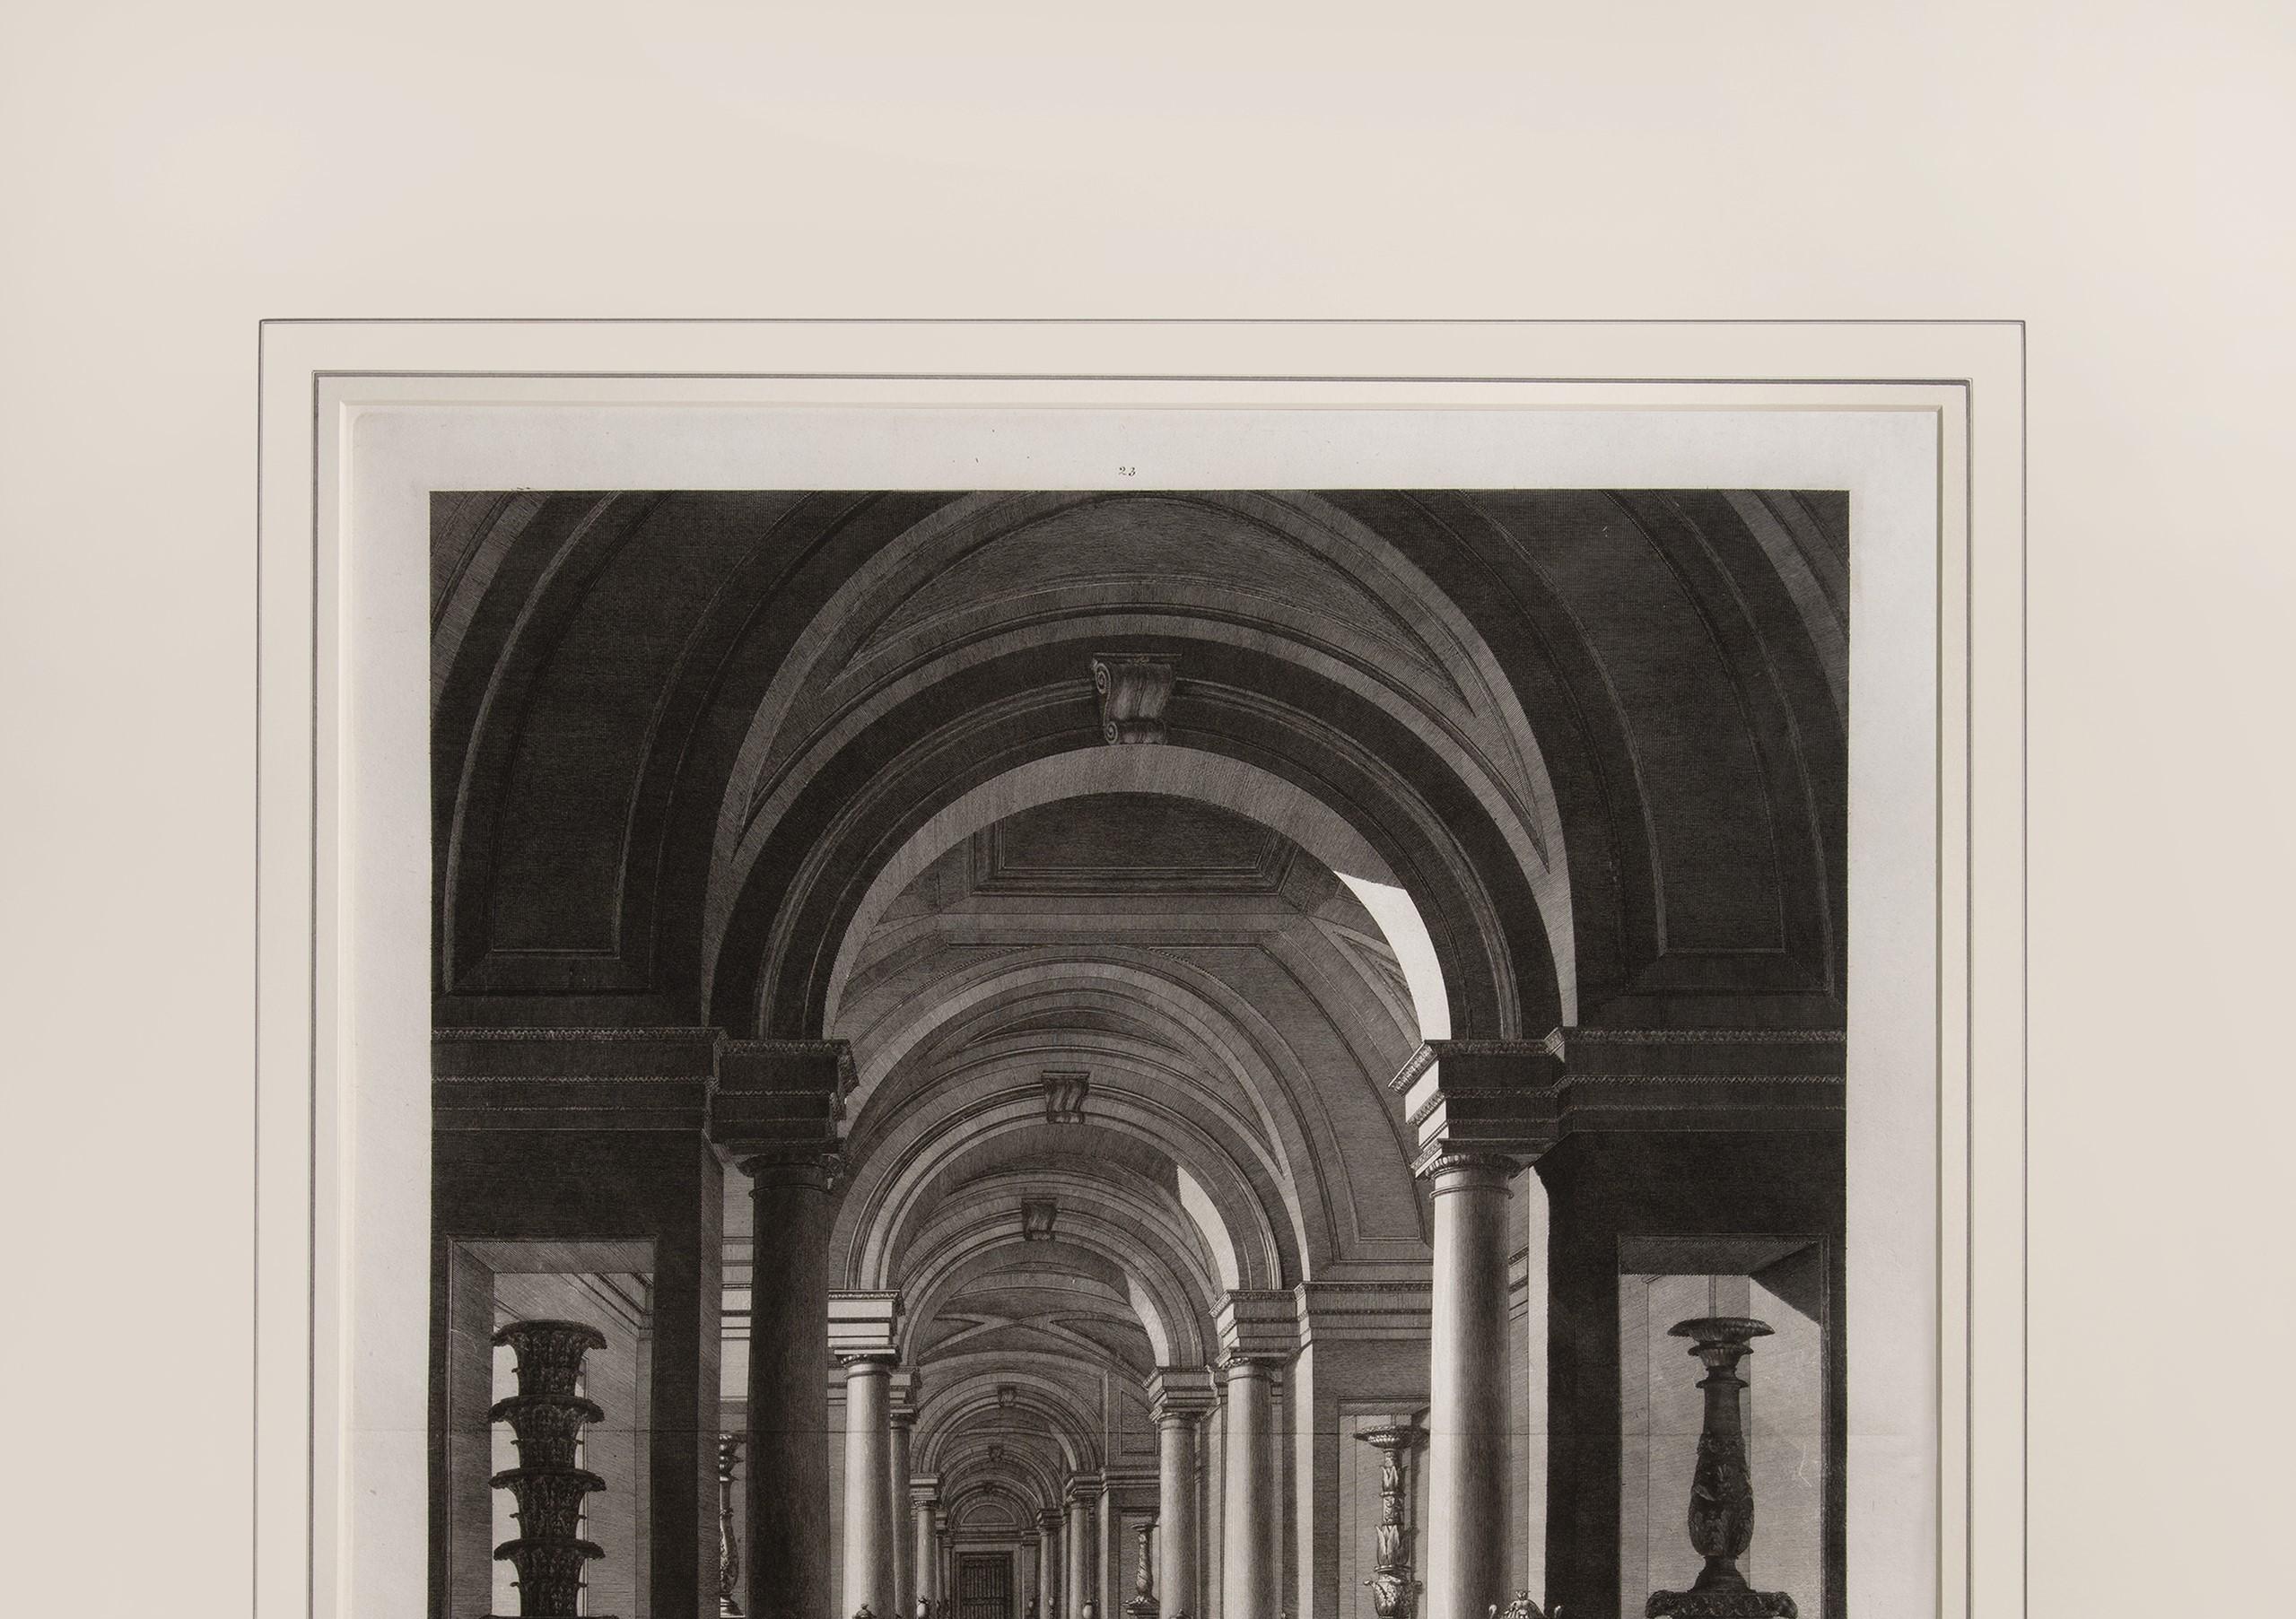 Prchtiger groer Teller, der das Vatikanische Museum illustriert – Print von FEOLI, Vincenzo.